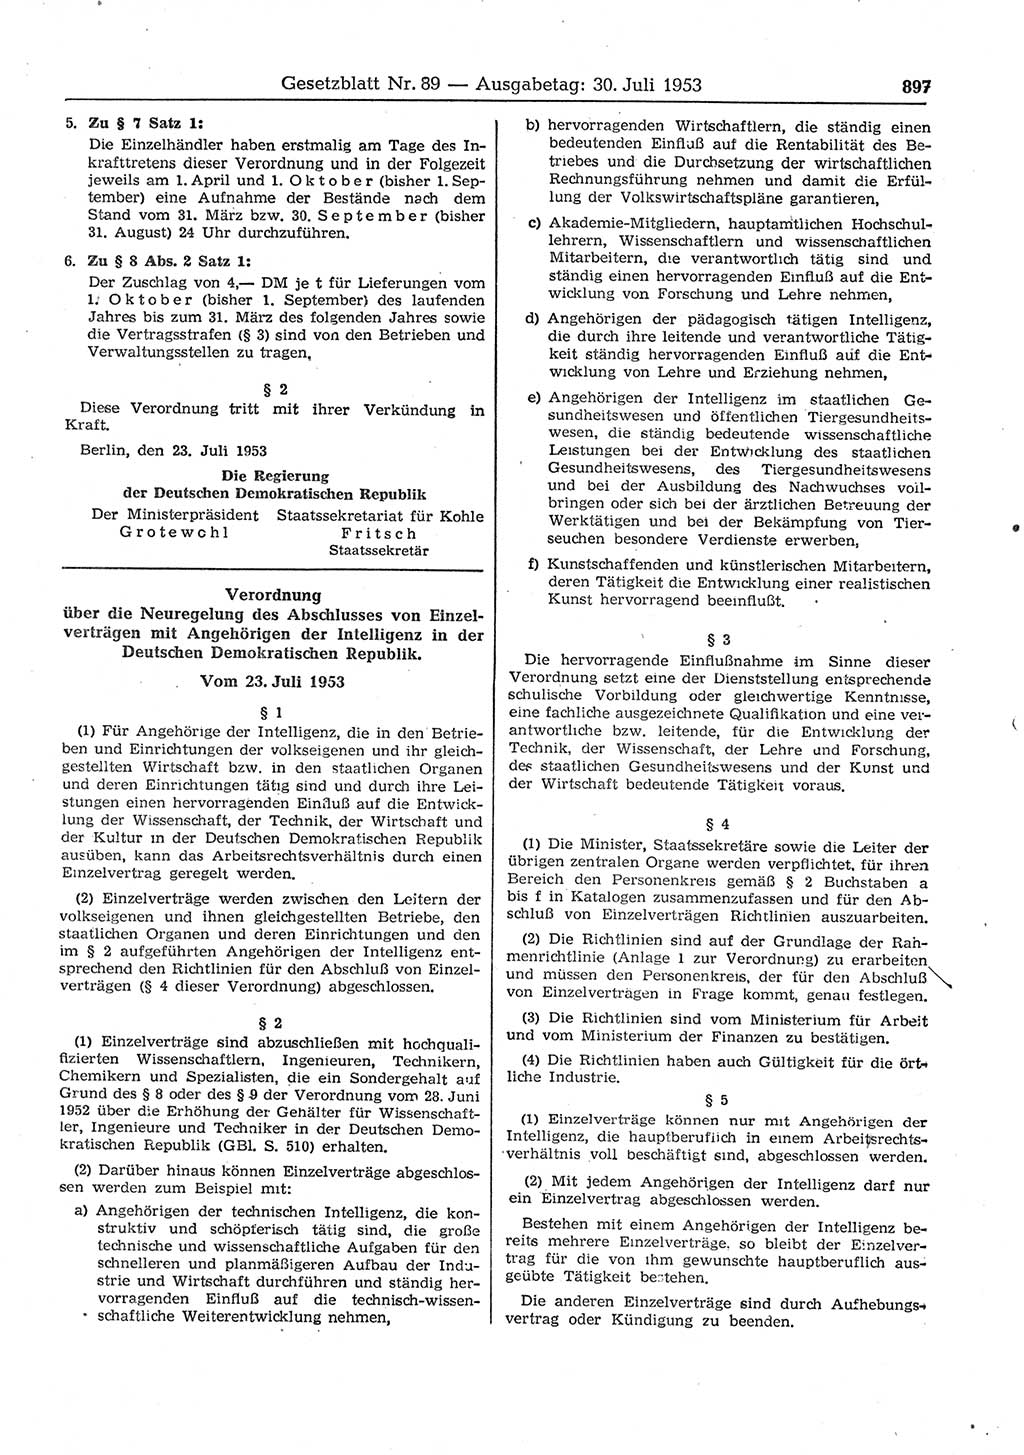 Gesetzblatt (GBl.) der Deutschen Demokratischen Republik (DDR) 1953, Seite 897 (GBl. DDR 1953, S. 897)